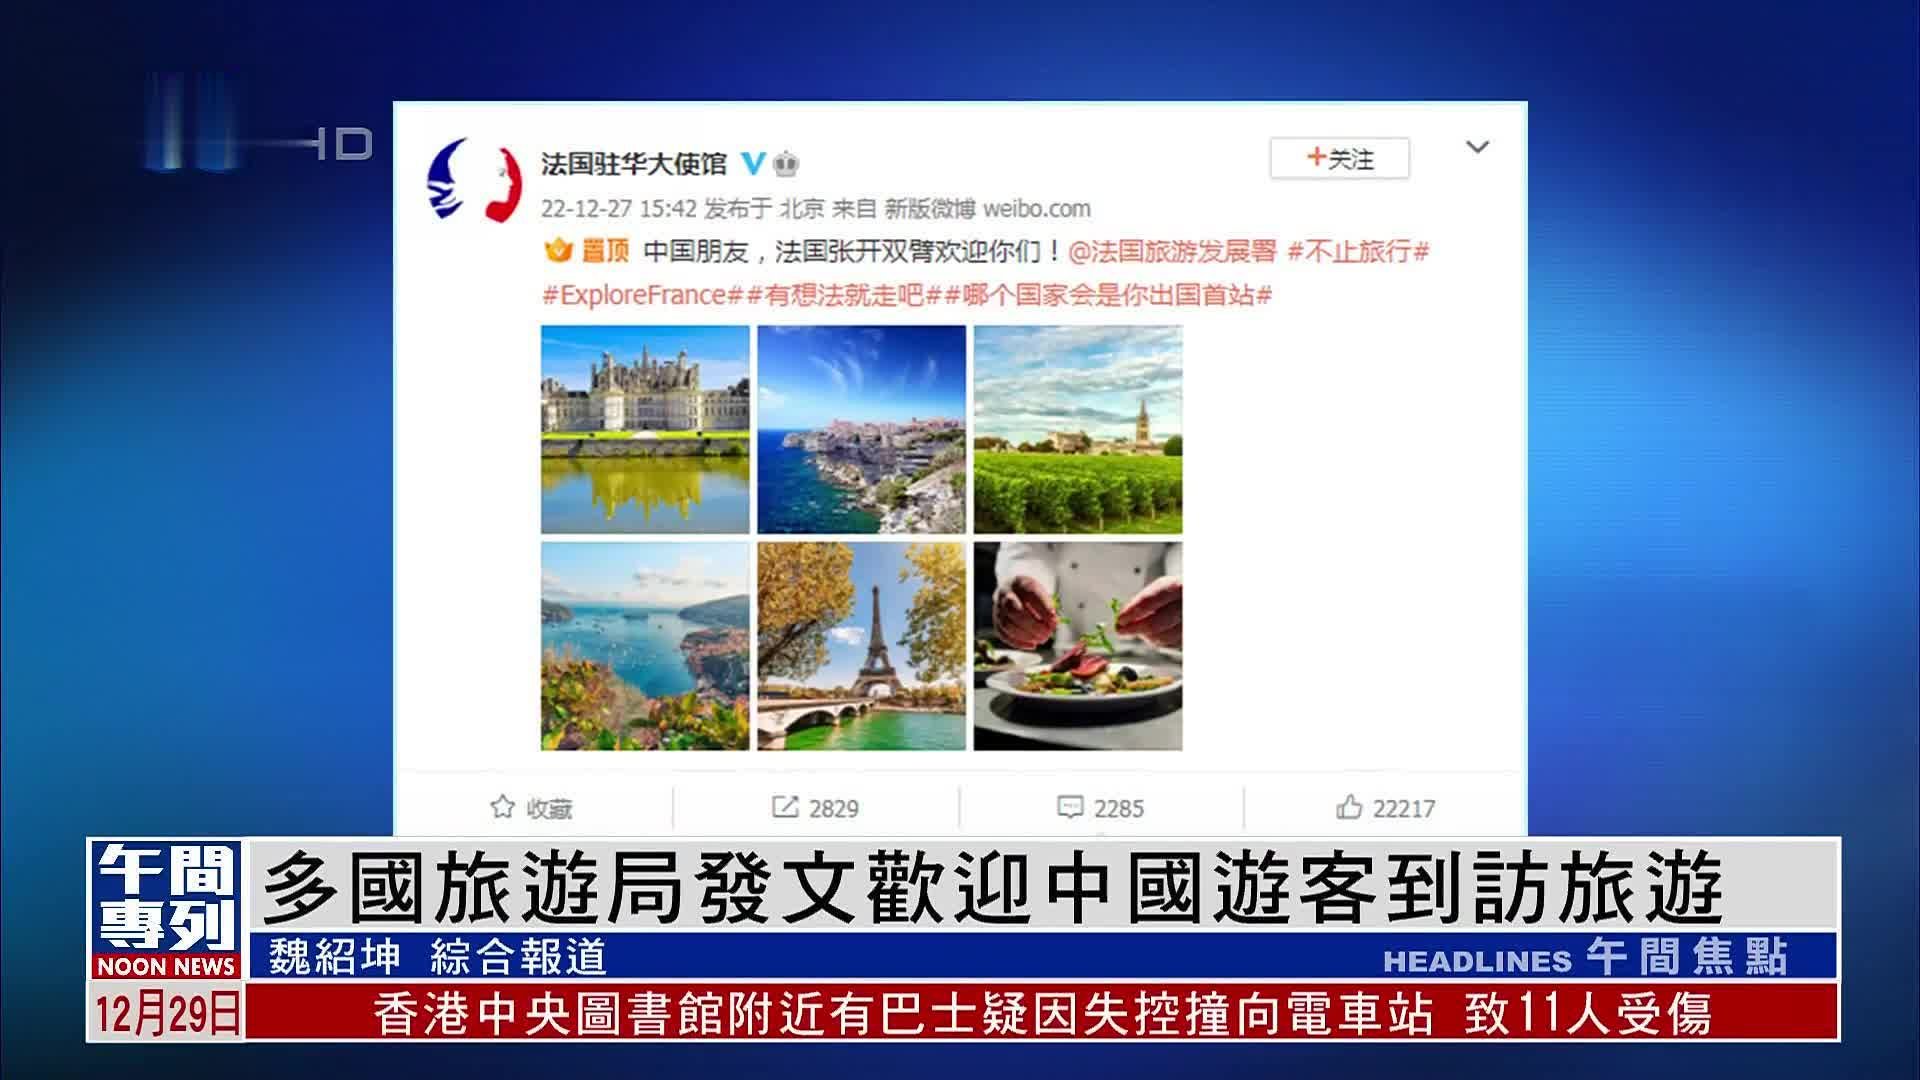 出境游热度上升 多国欢迎中国游客到访 -6park.com